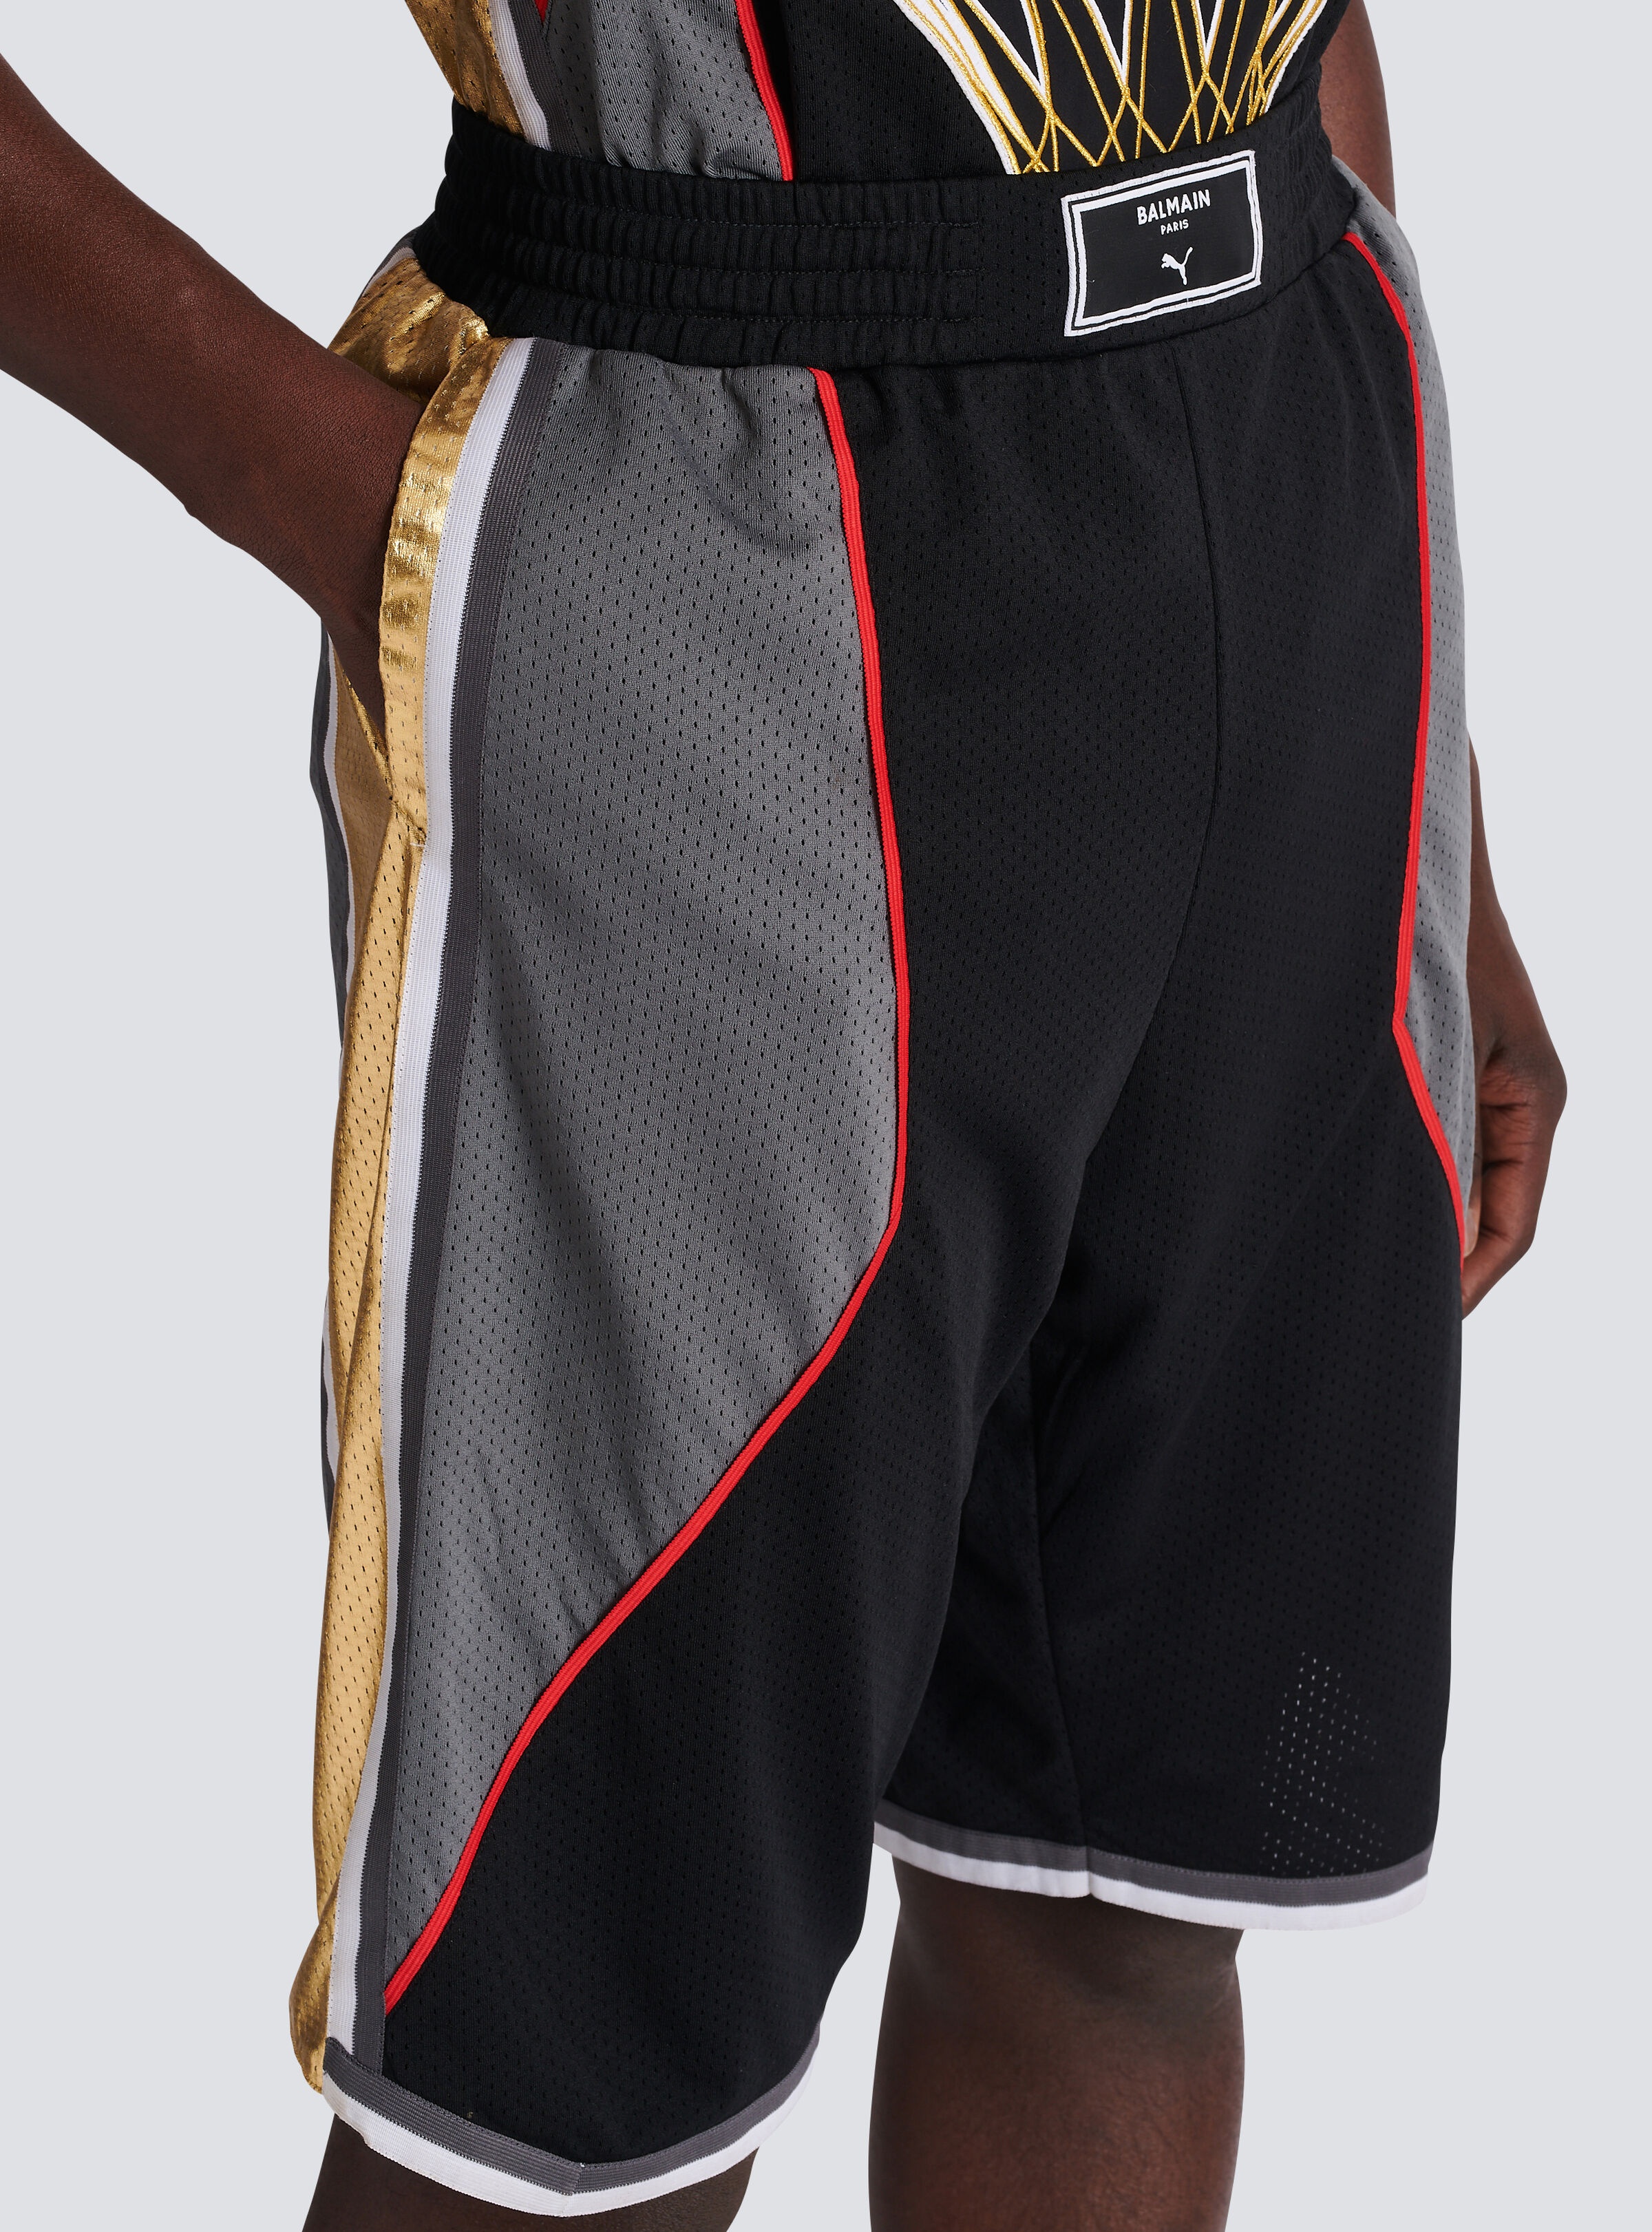 Balmain x Puma - Basketball shorts - 6